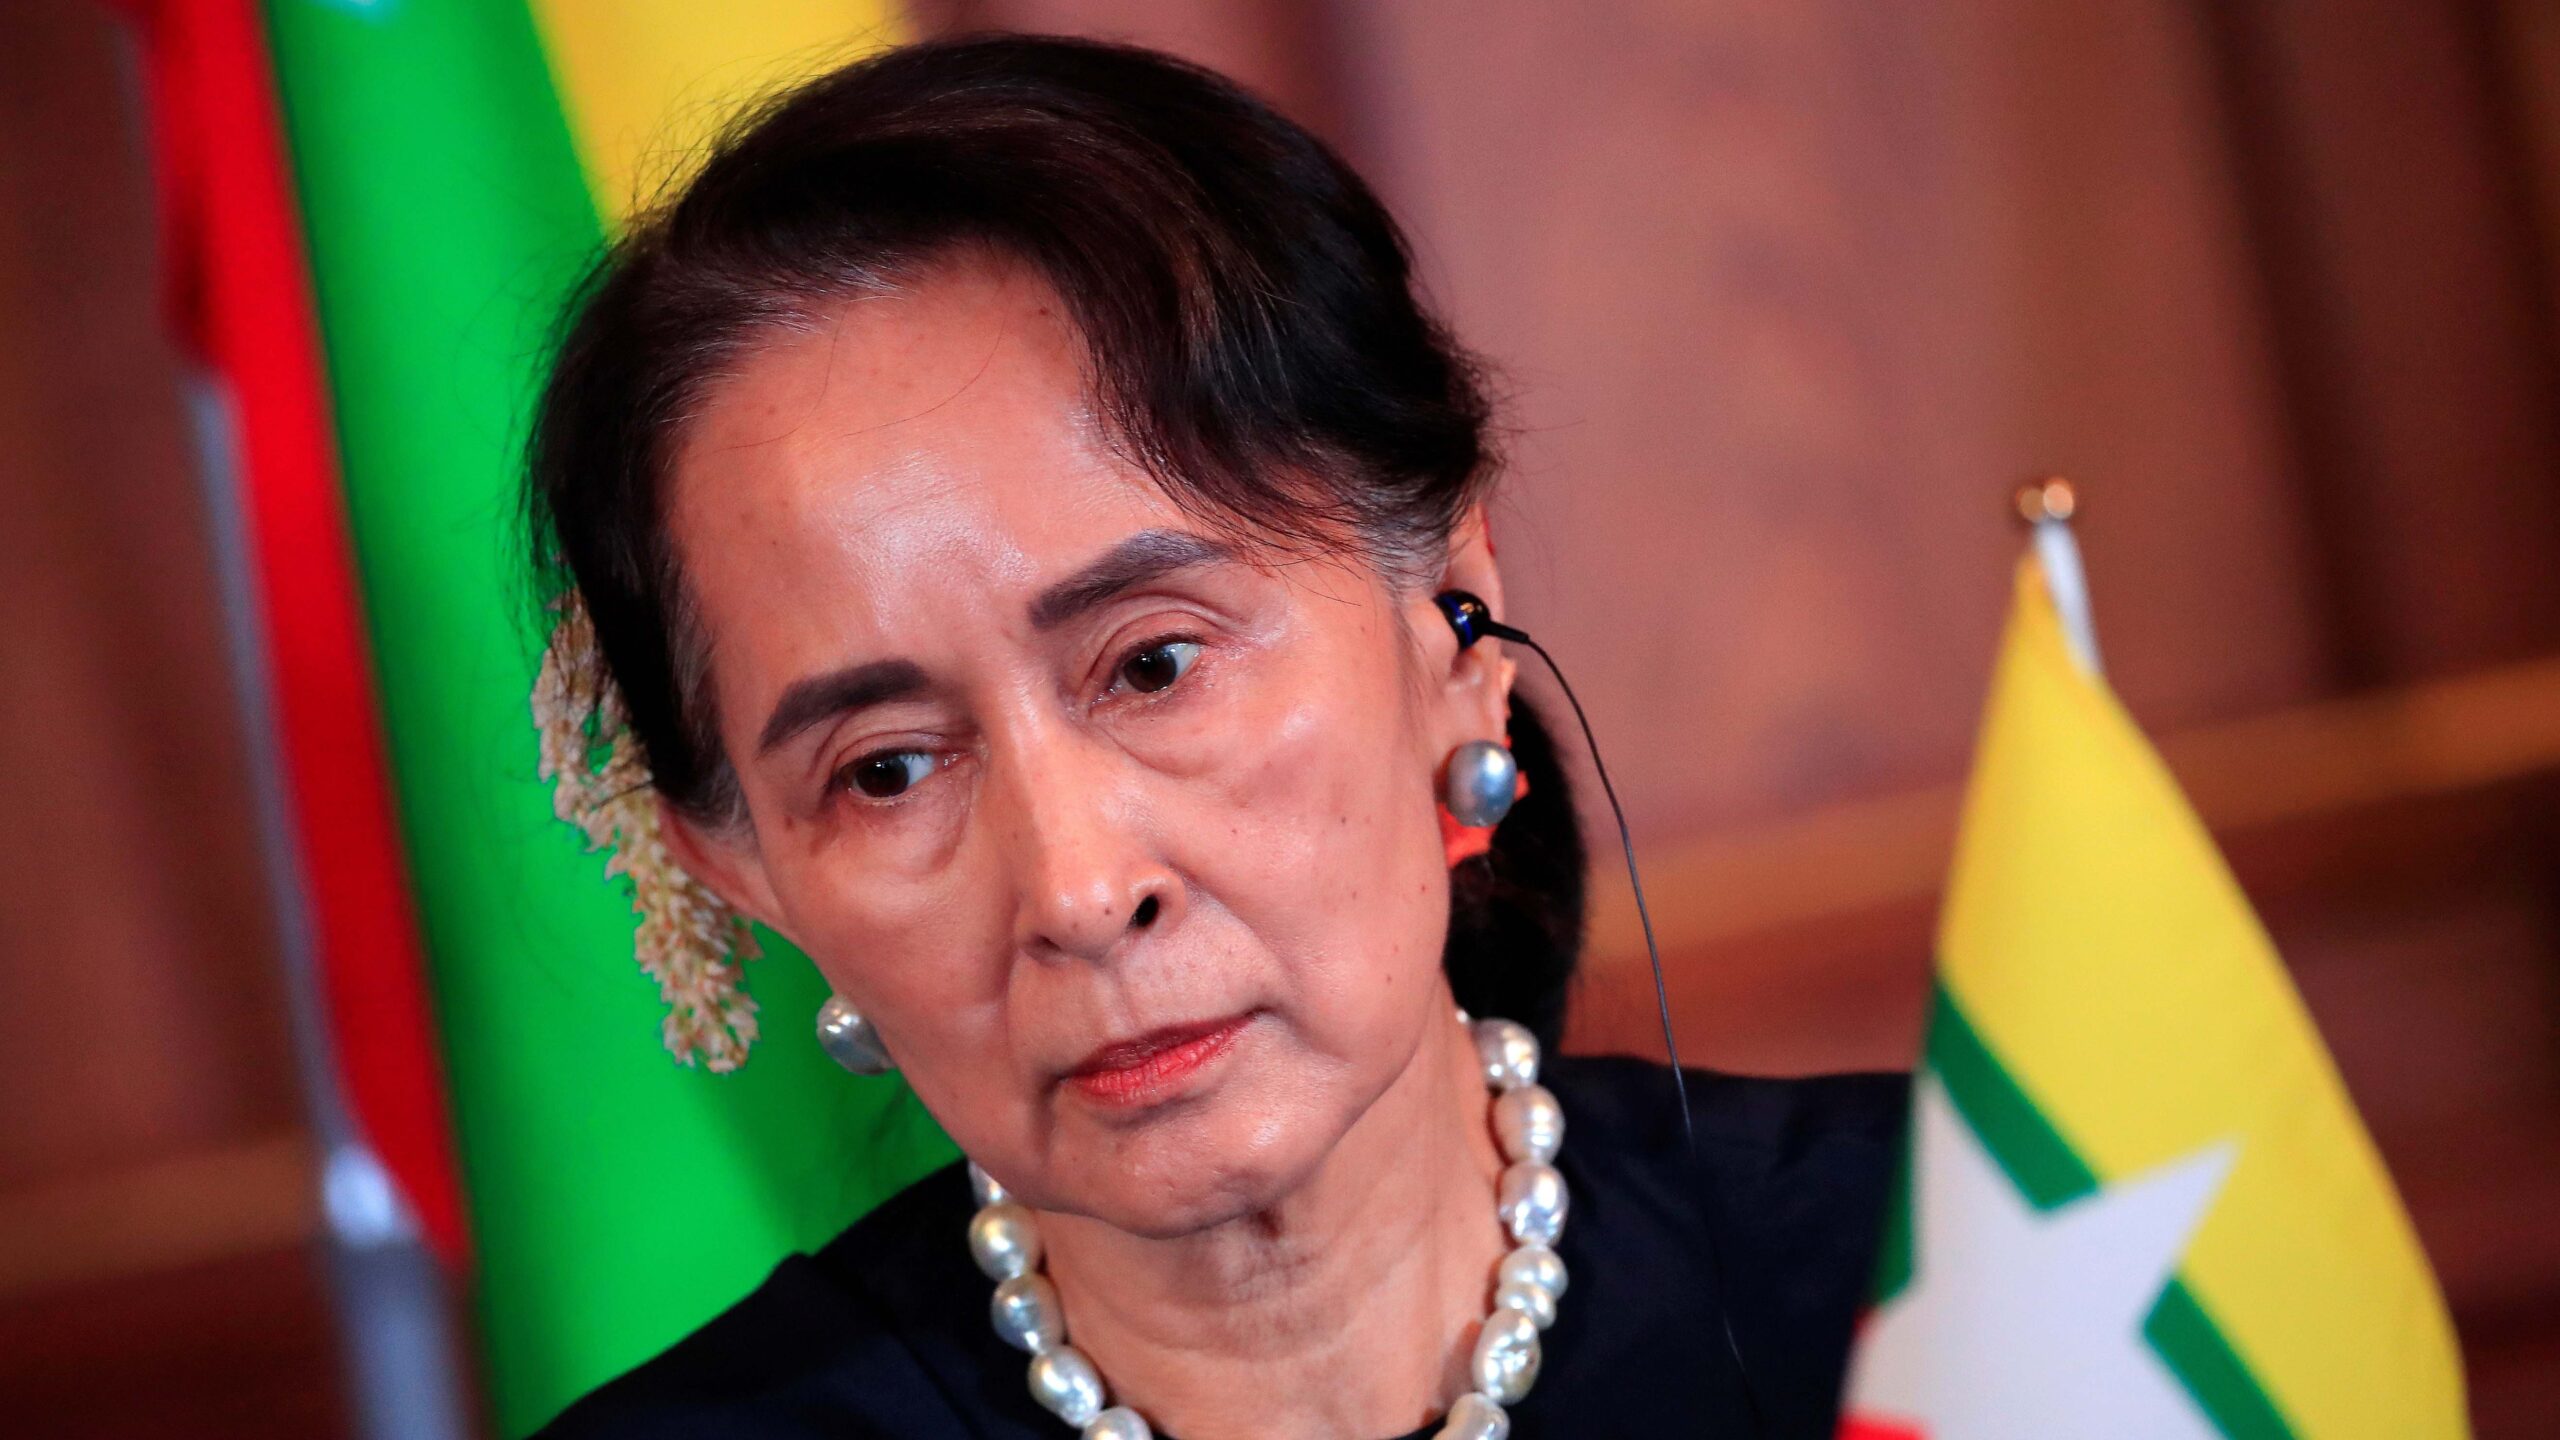 Condenan a prisión a líder depuesta con golpe de Estado en Myanmar